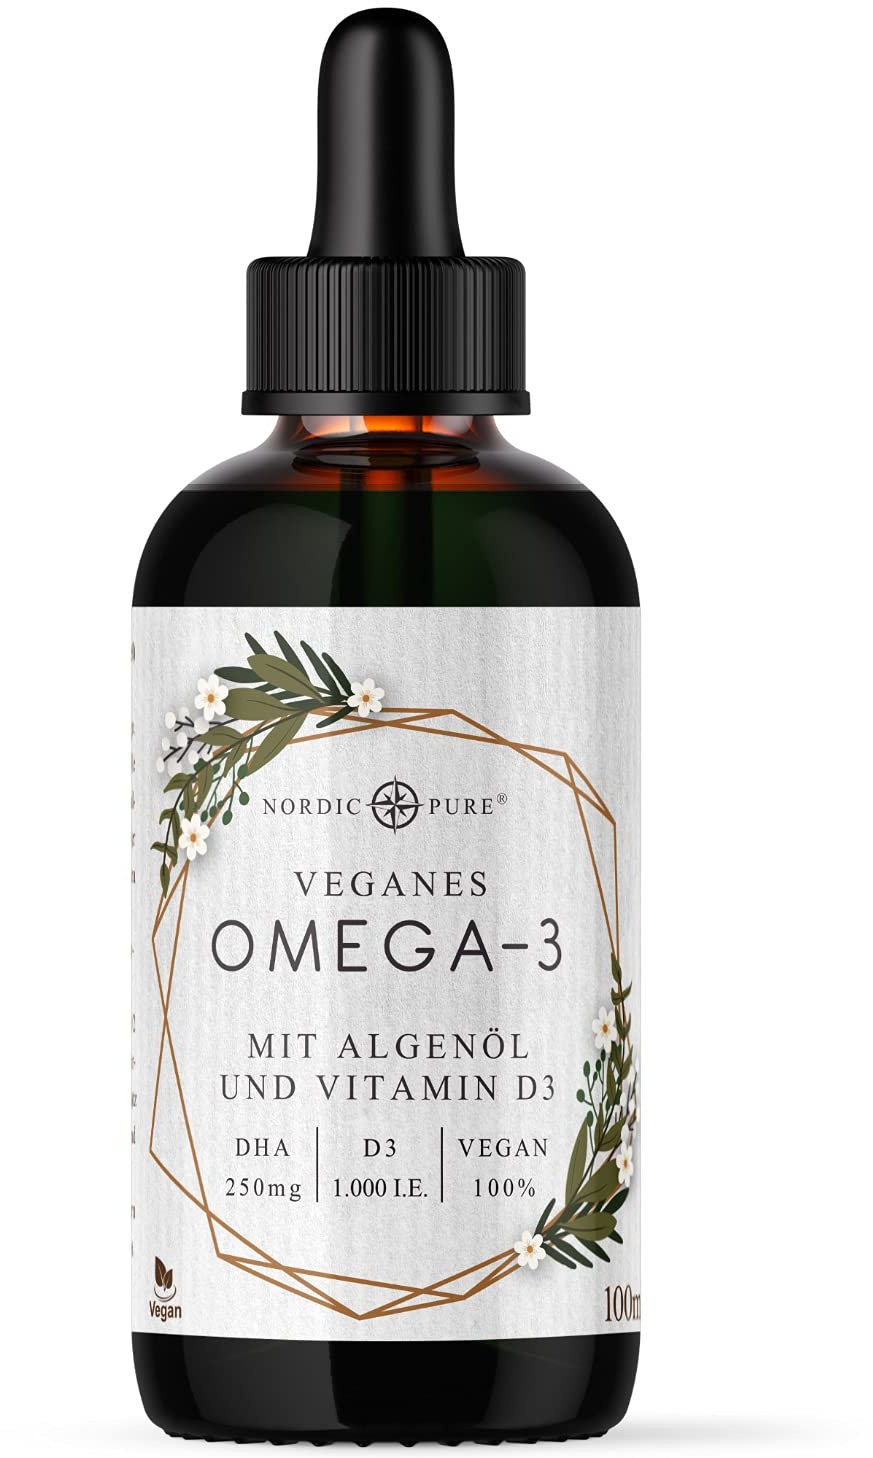 Veganes Omega 3 Algenöl Präparat | DHA und EPA aus der Mikroalge Schizochytrium sp. | Mit Vitamin D3 | Auf Basis von Bio Hanfsamenöl | Hoher Anteil an Alpha-Linolsäure und Alpha Linolensäure, 100 ml